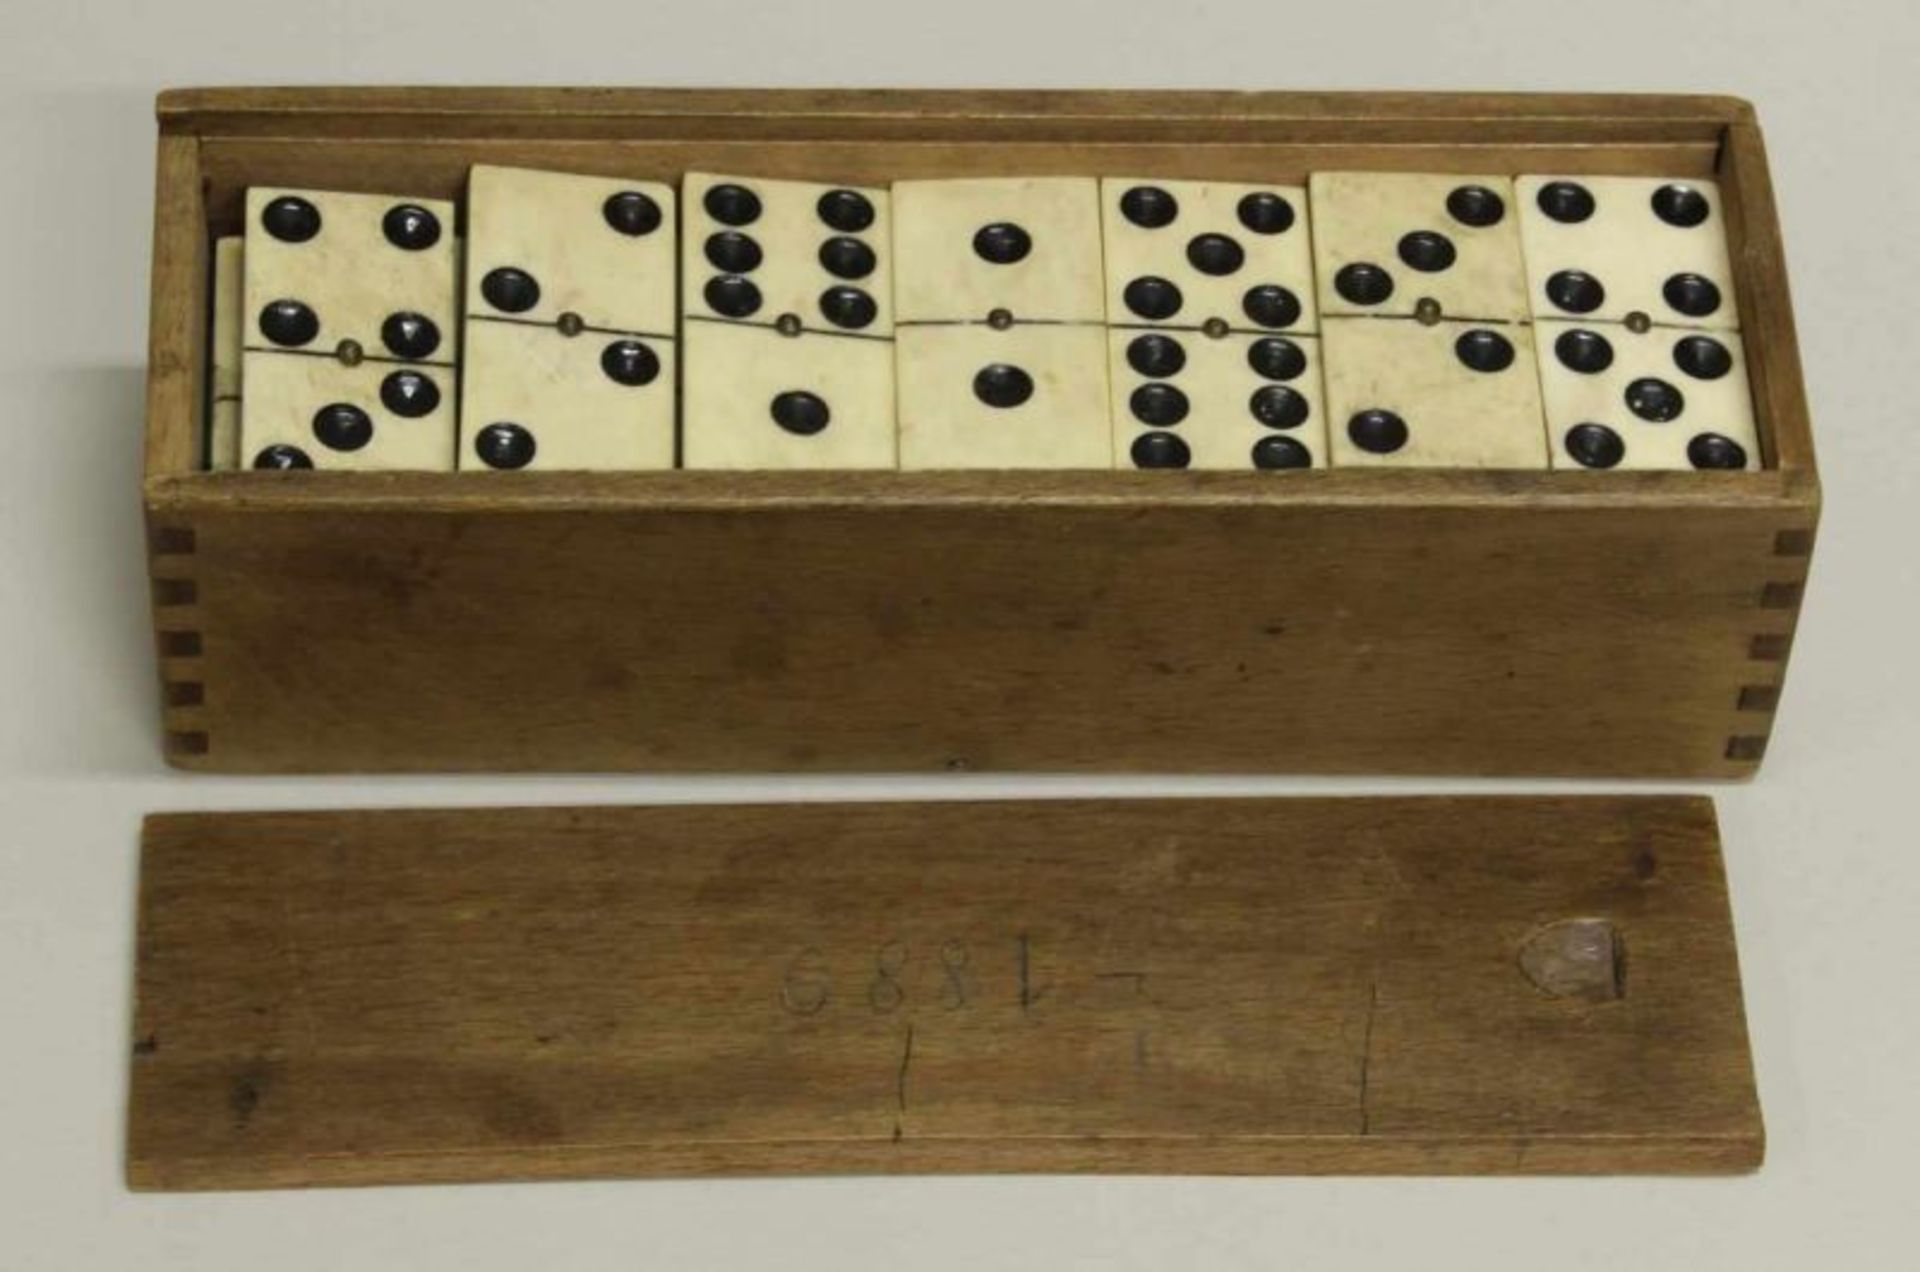 Dominosteine im Holzkasten, deutsch, um 1889, 28 Spielsteine aus Bein und ebonisiertem Holz, ca. 5.5